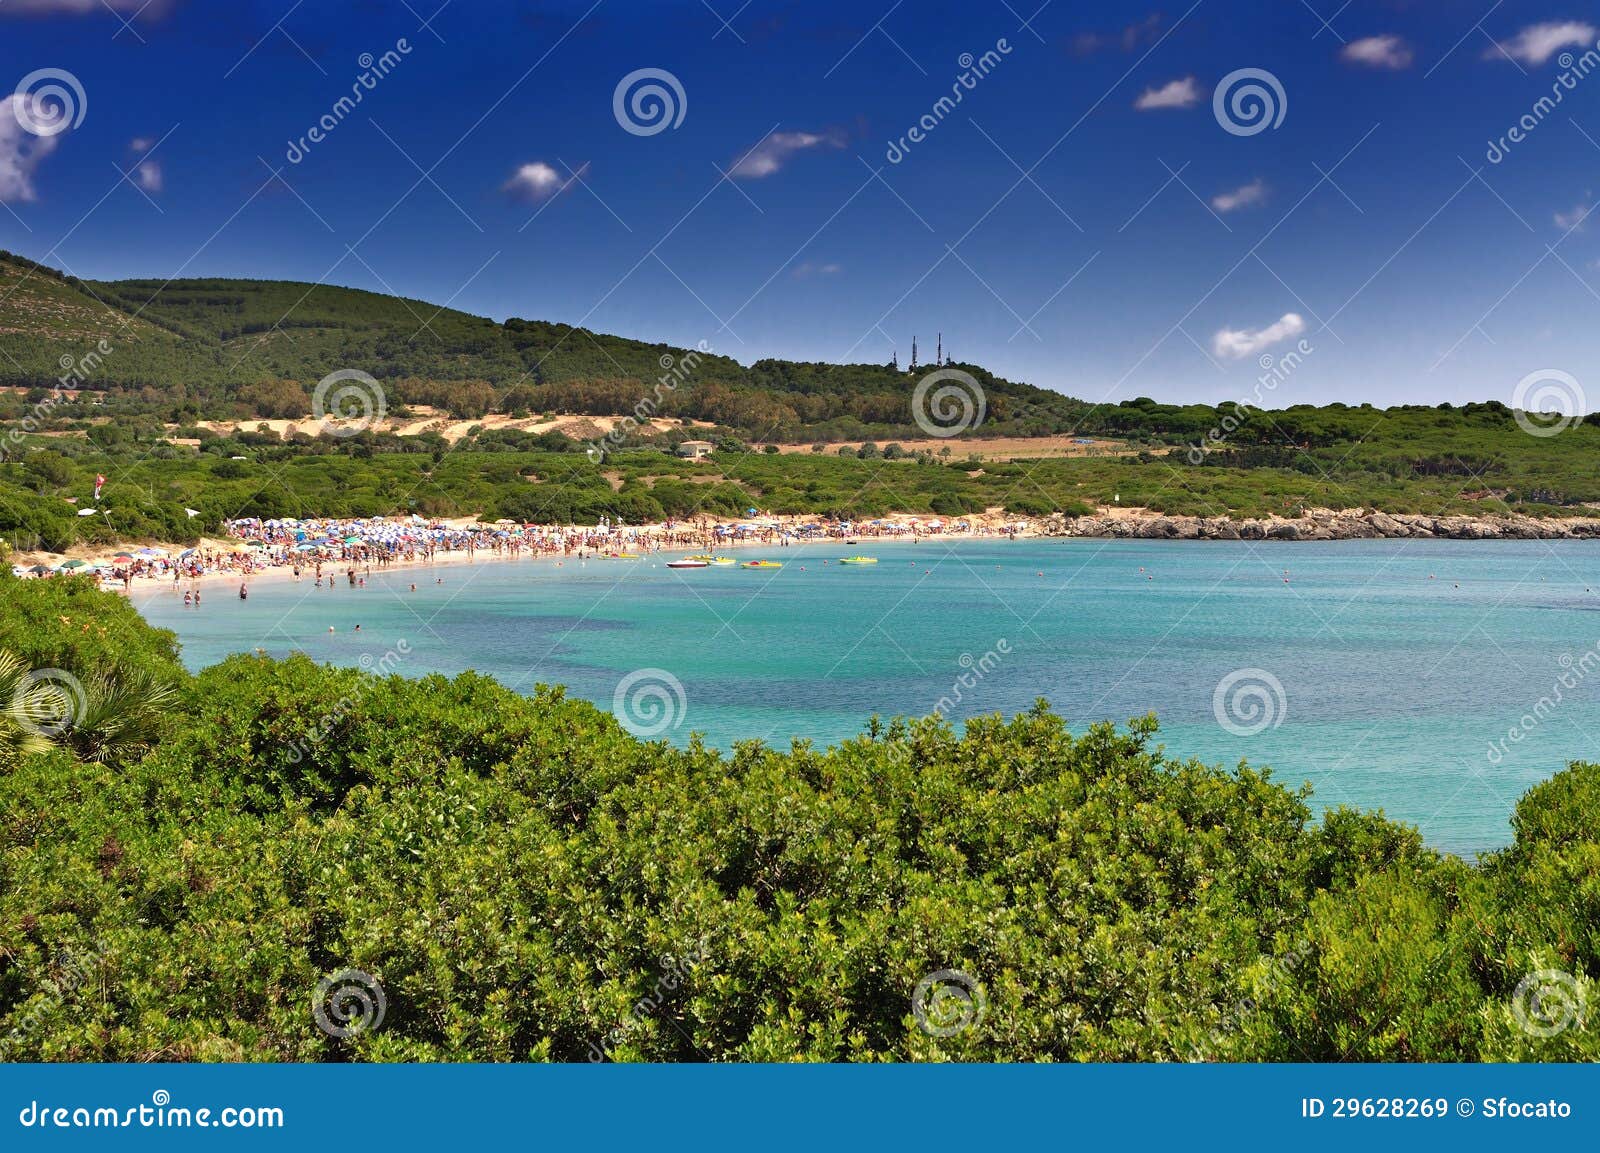 lazzaretto beach at alghero, sardinia, italy